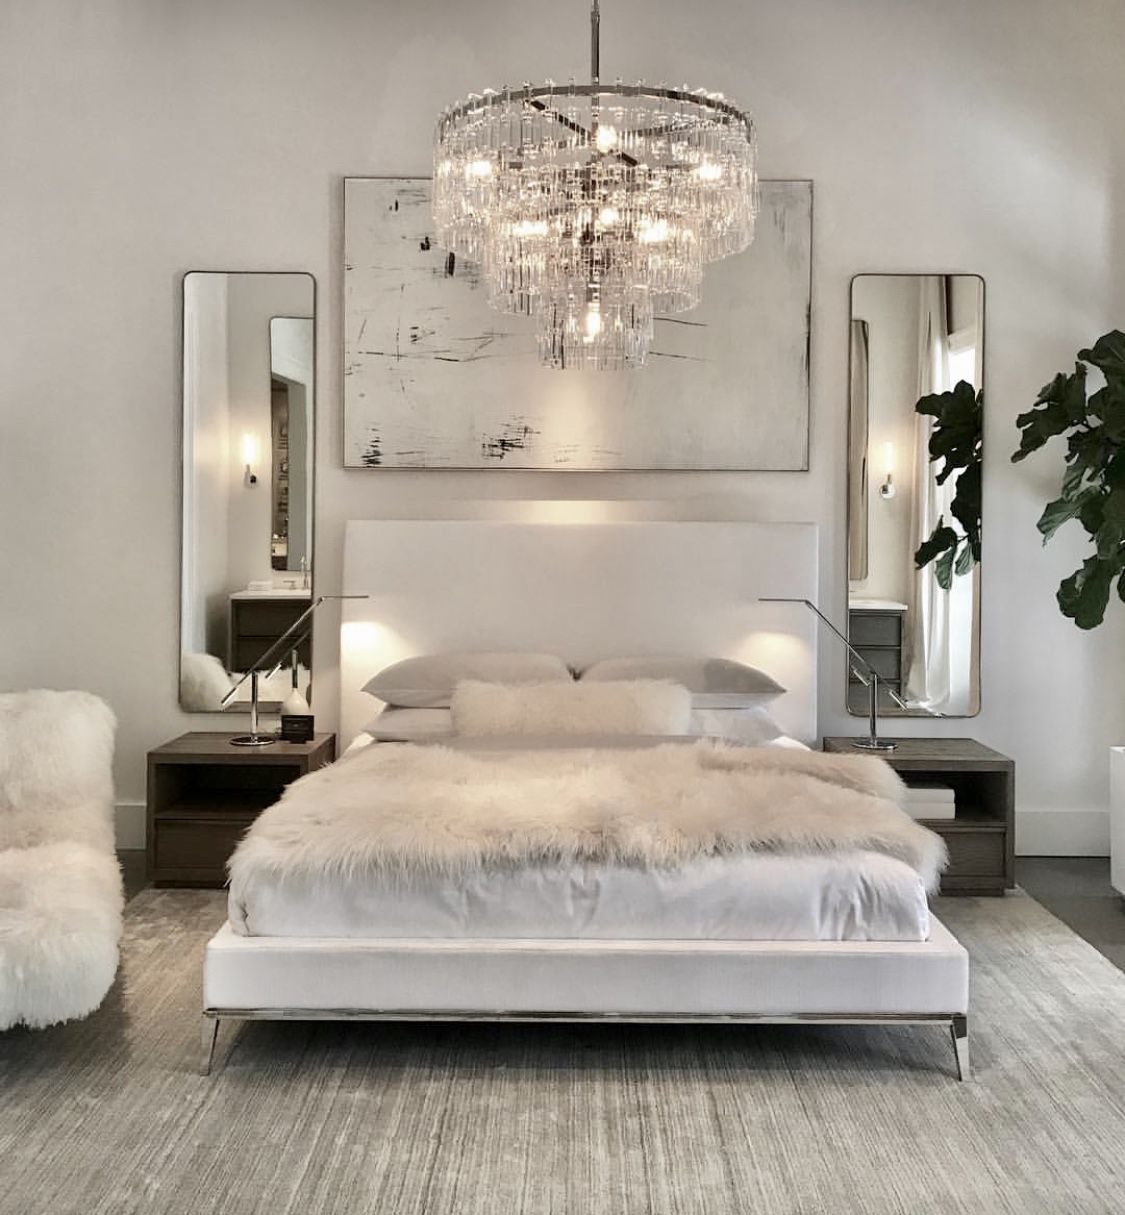 Luxury All White Bedroom Decor